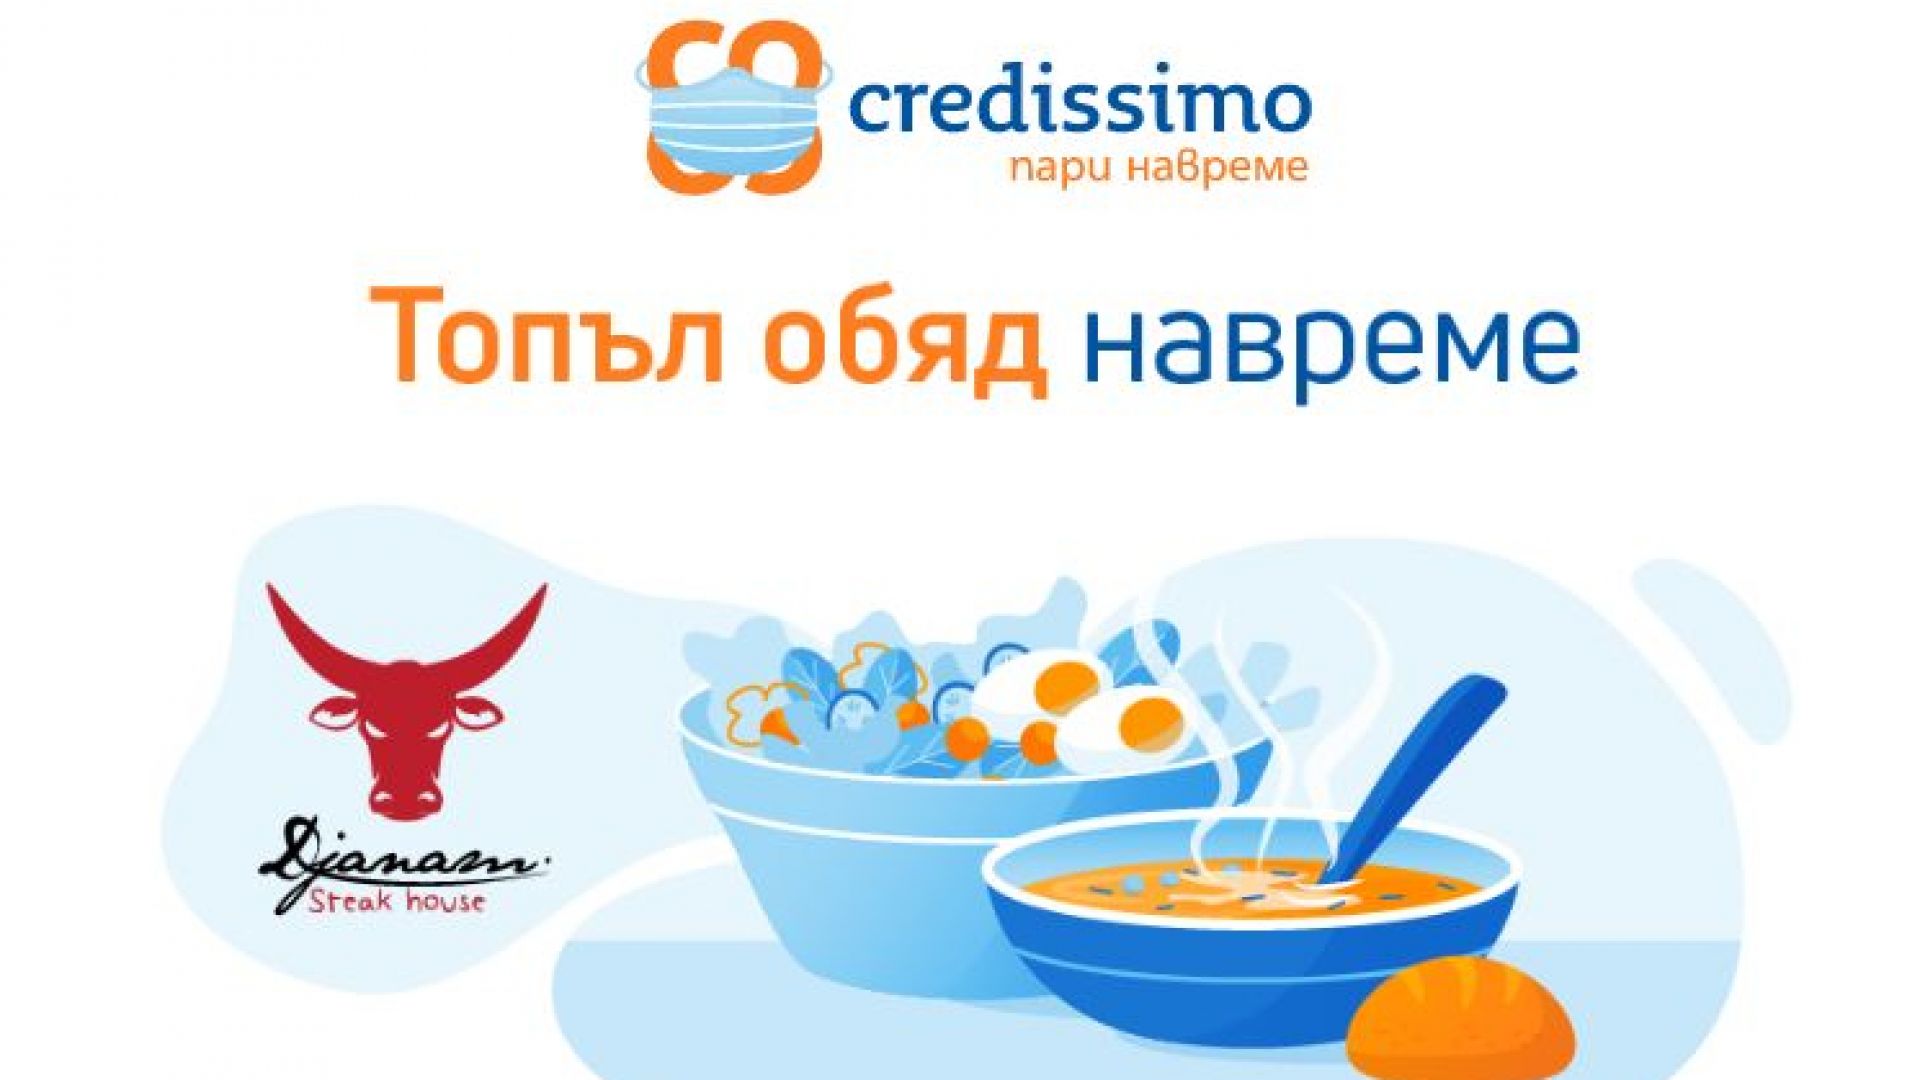 Топъл обяд навреме -  Credissimo, заедно с клиентите си, всеки ден дарява топла храна